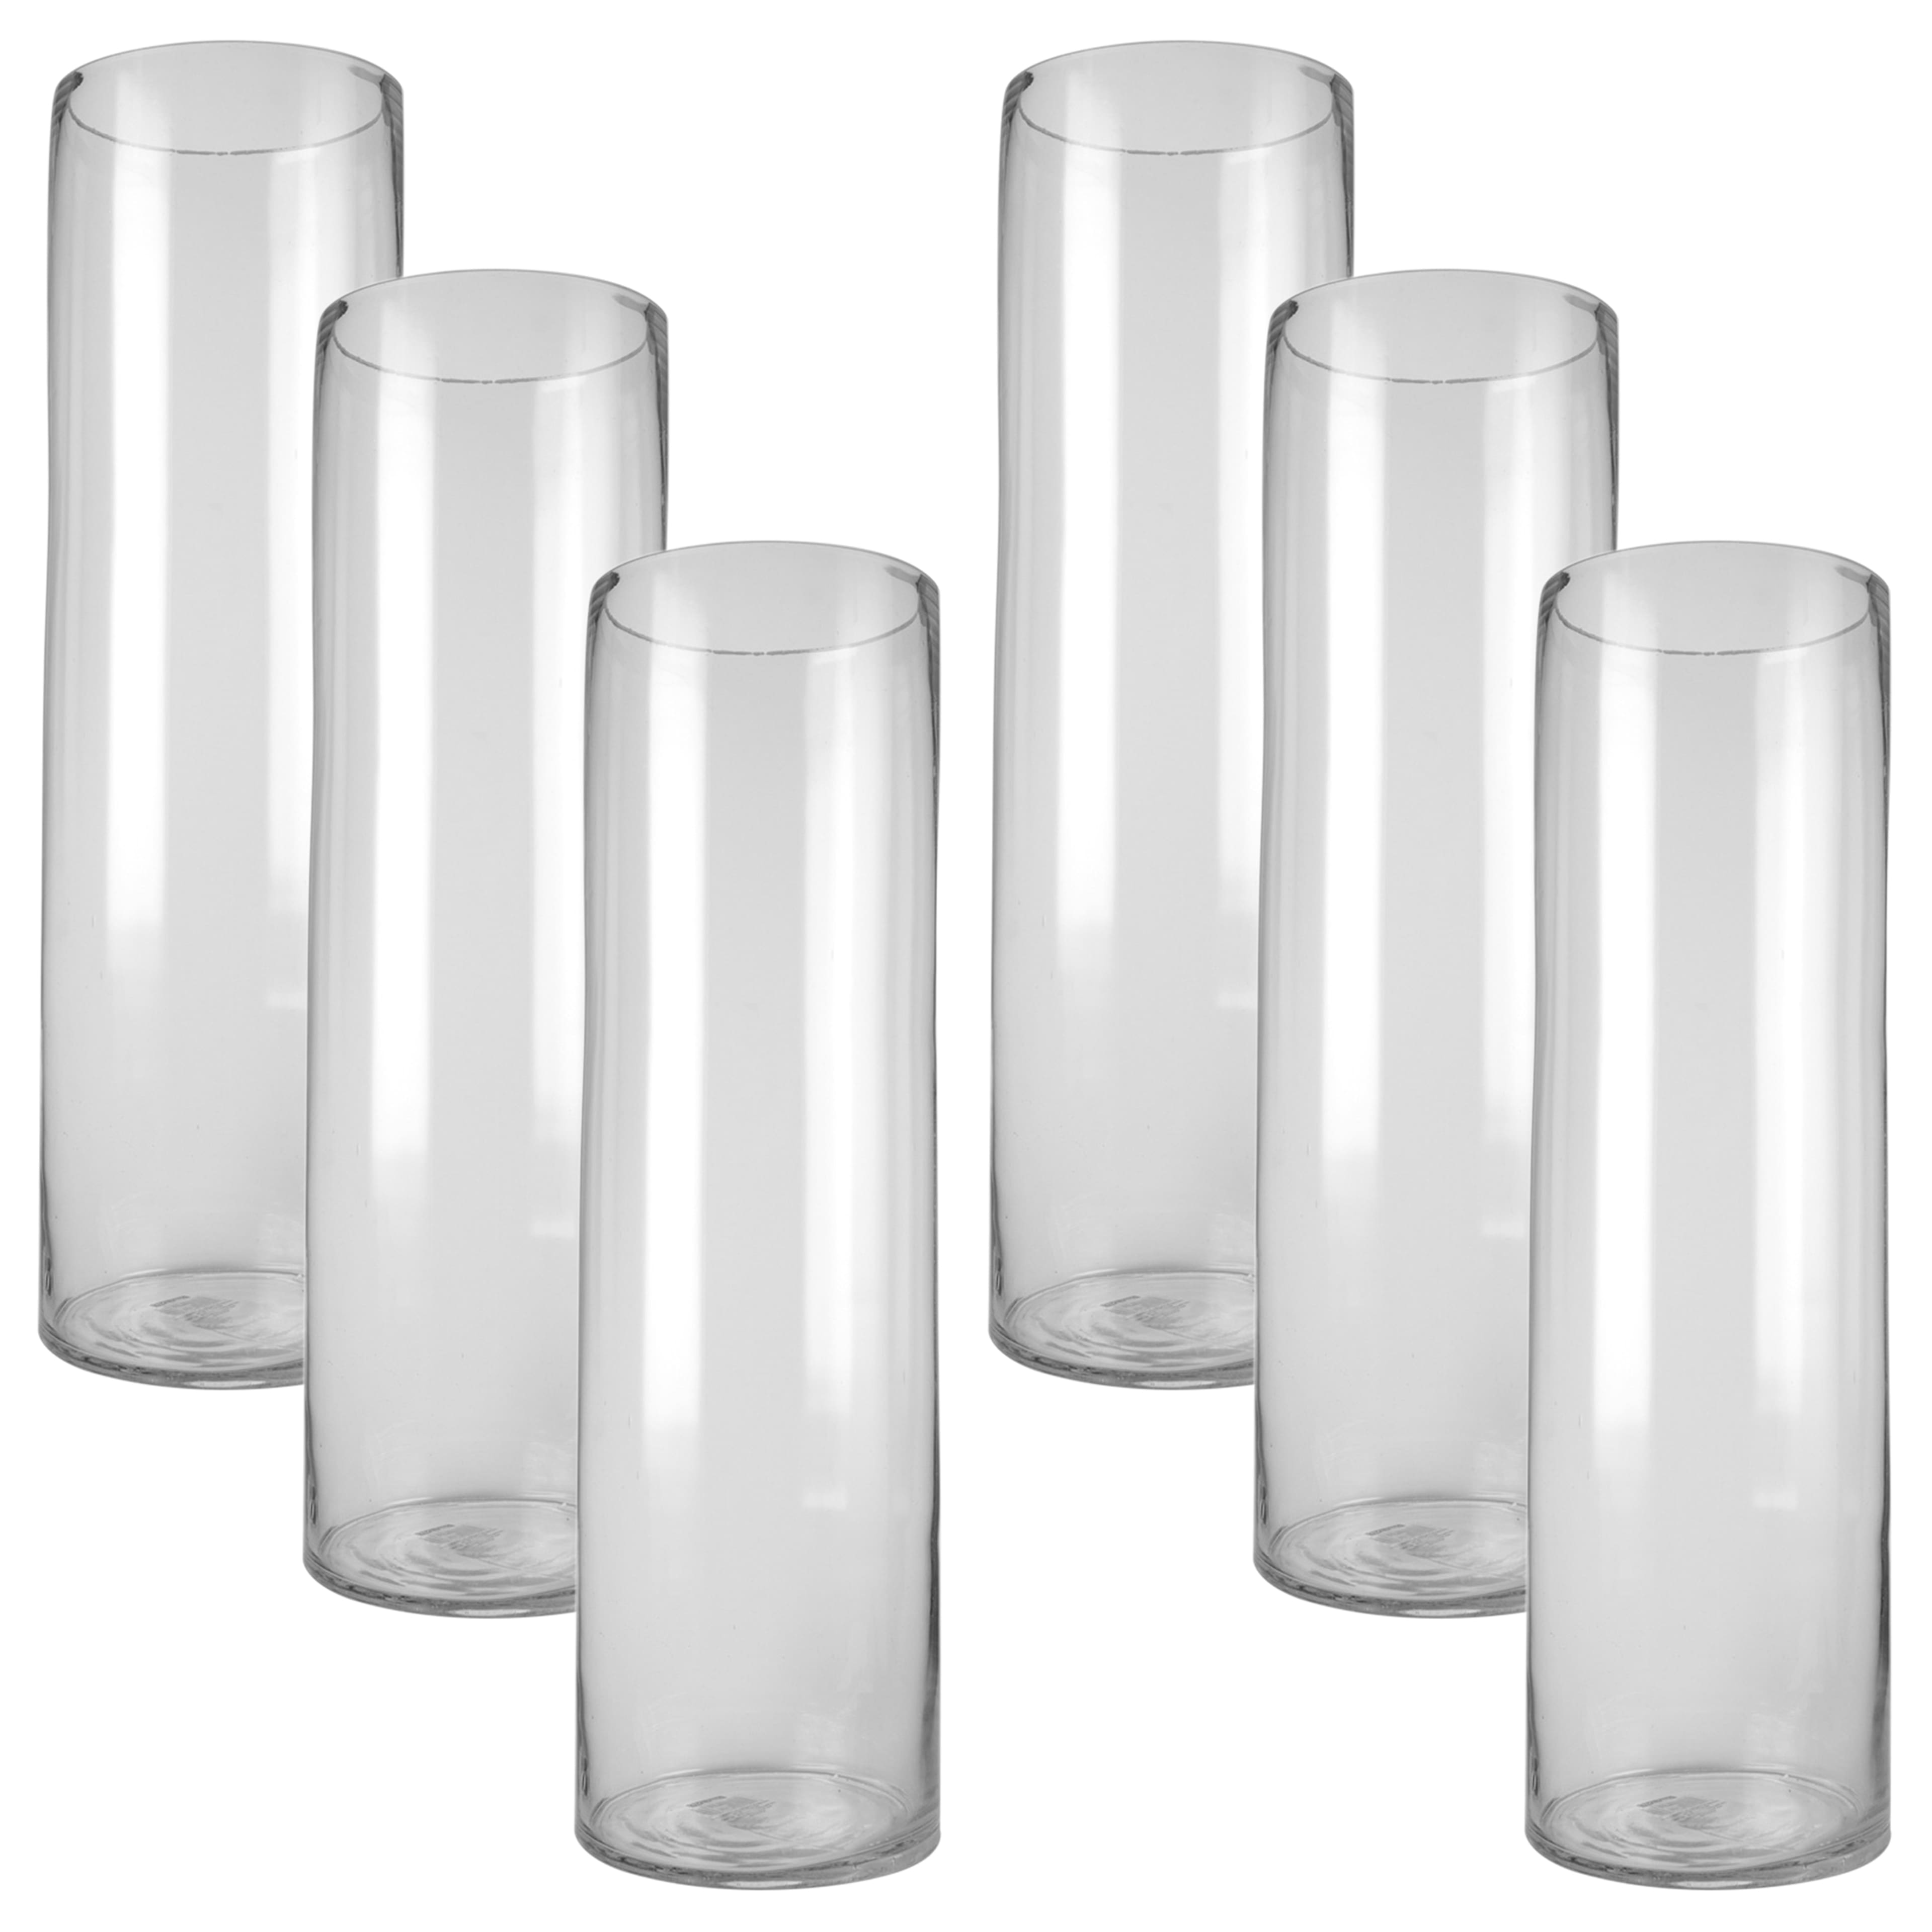 Propack Aluminum Disposable Pots With Lids 3.5 Quart (Small))